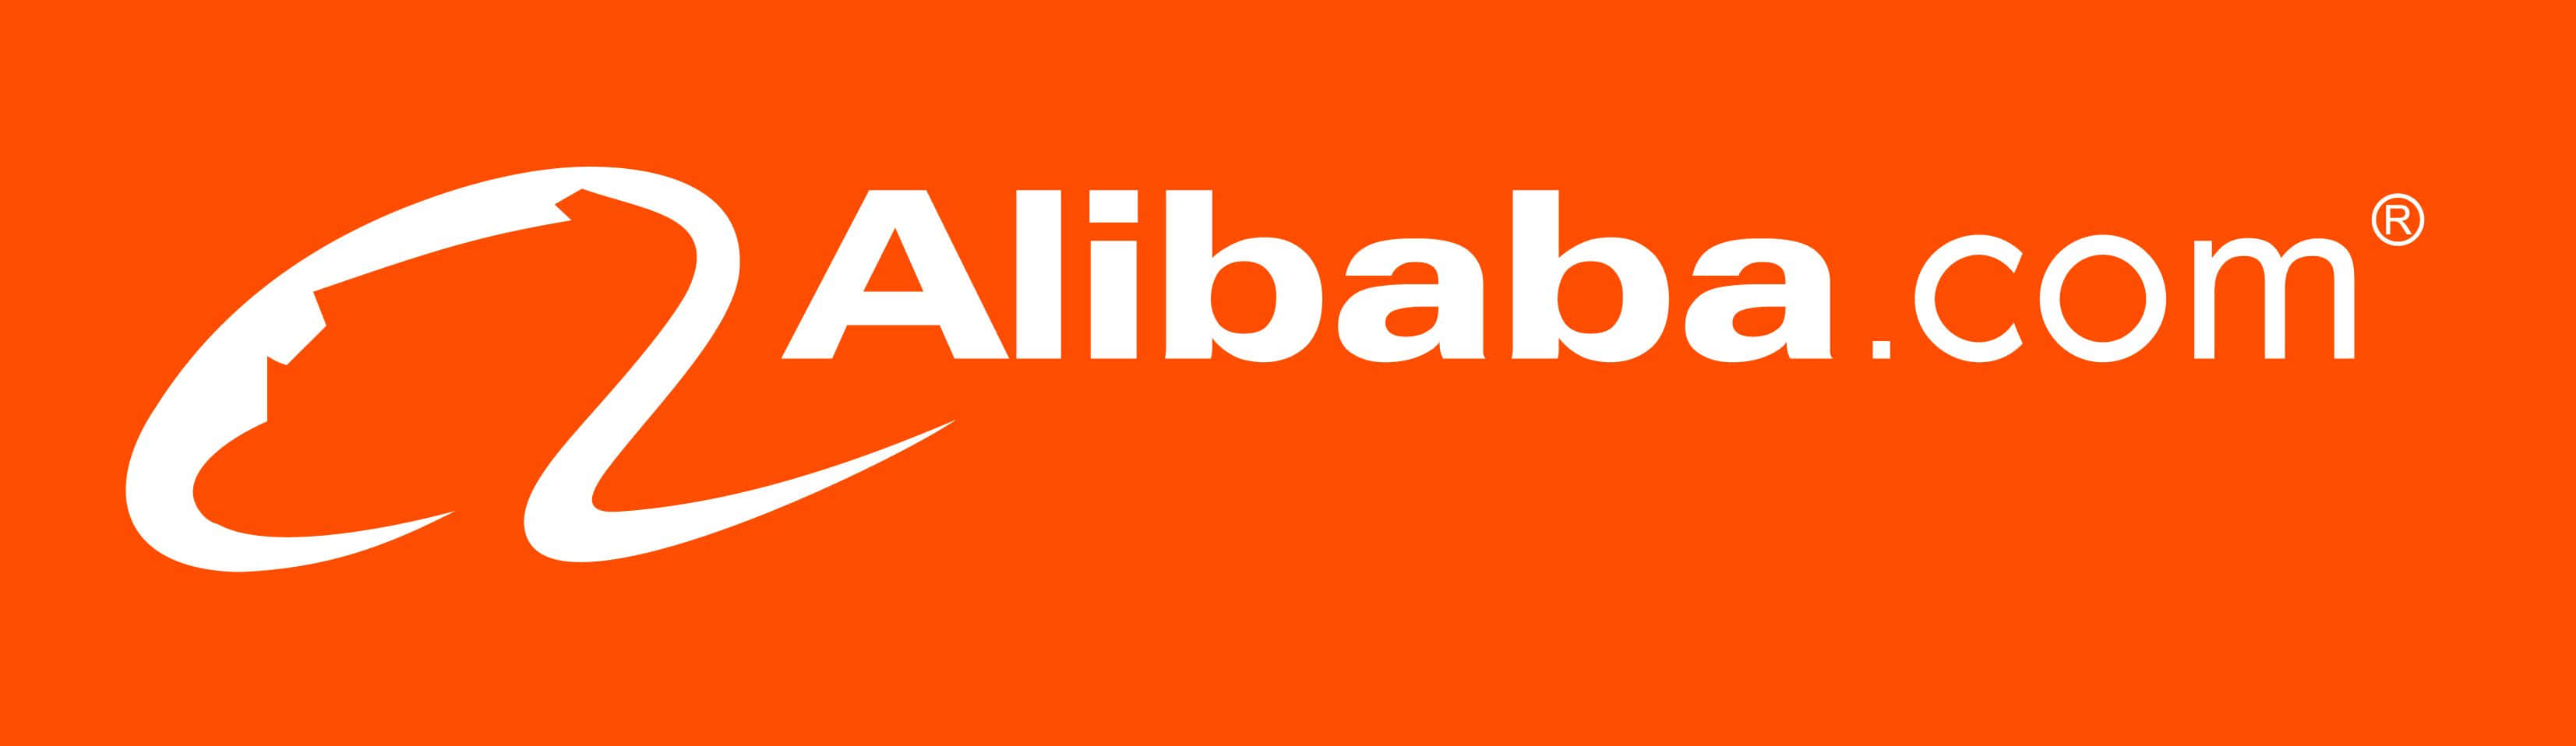 Alibabacom Logotyp På En Orange Bakgrund